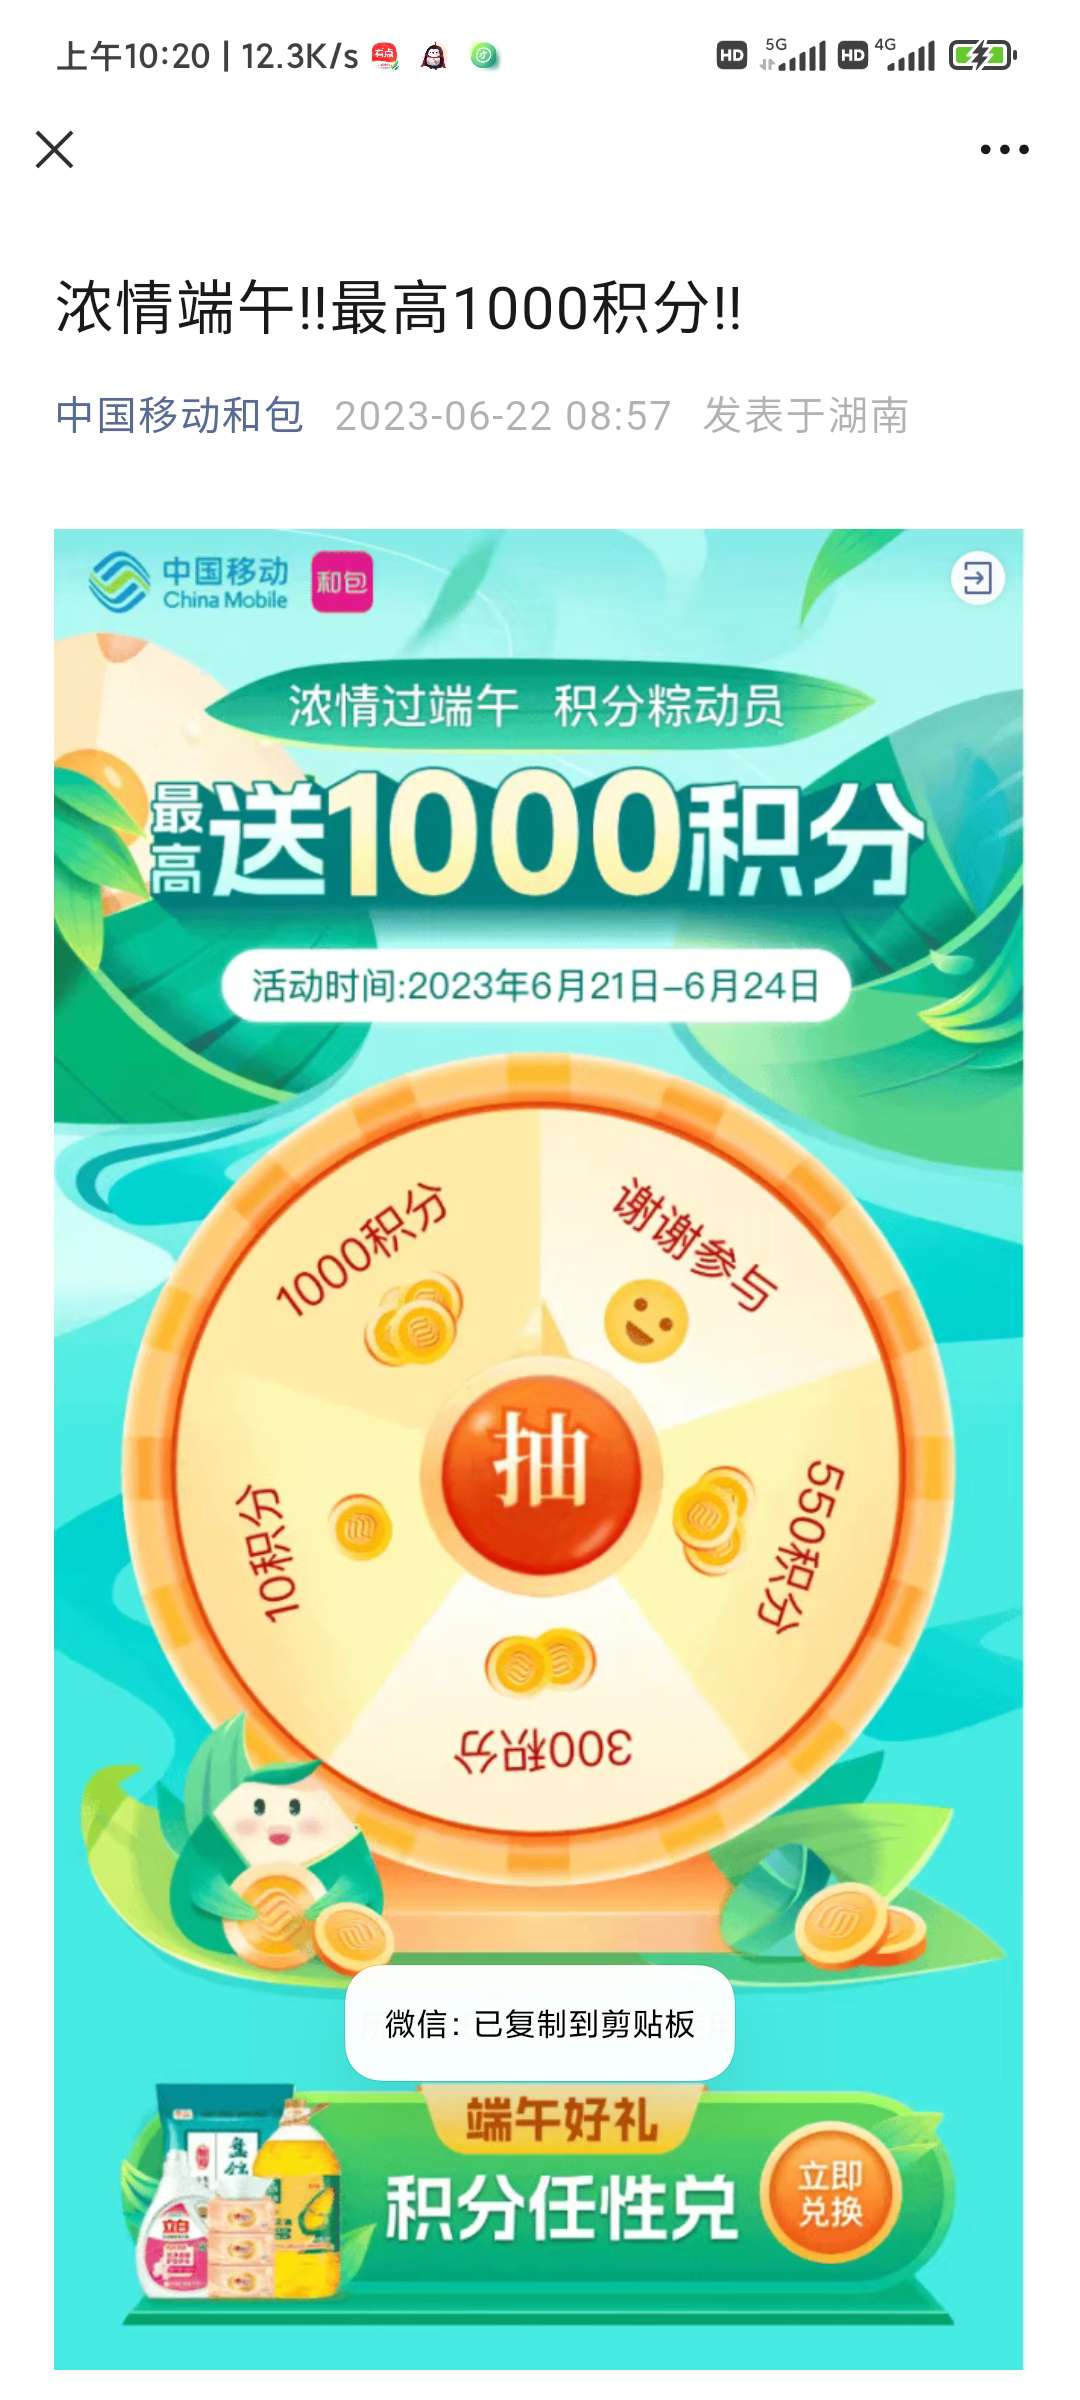 中国移动端午最高1000积分_福利红包